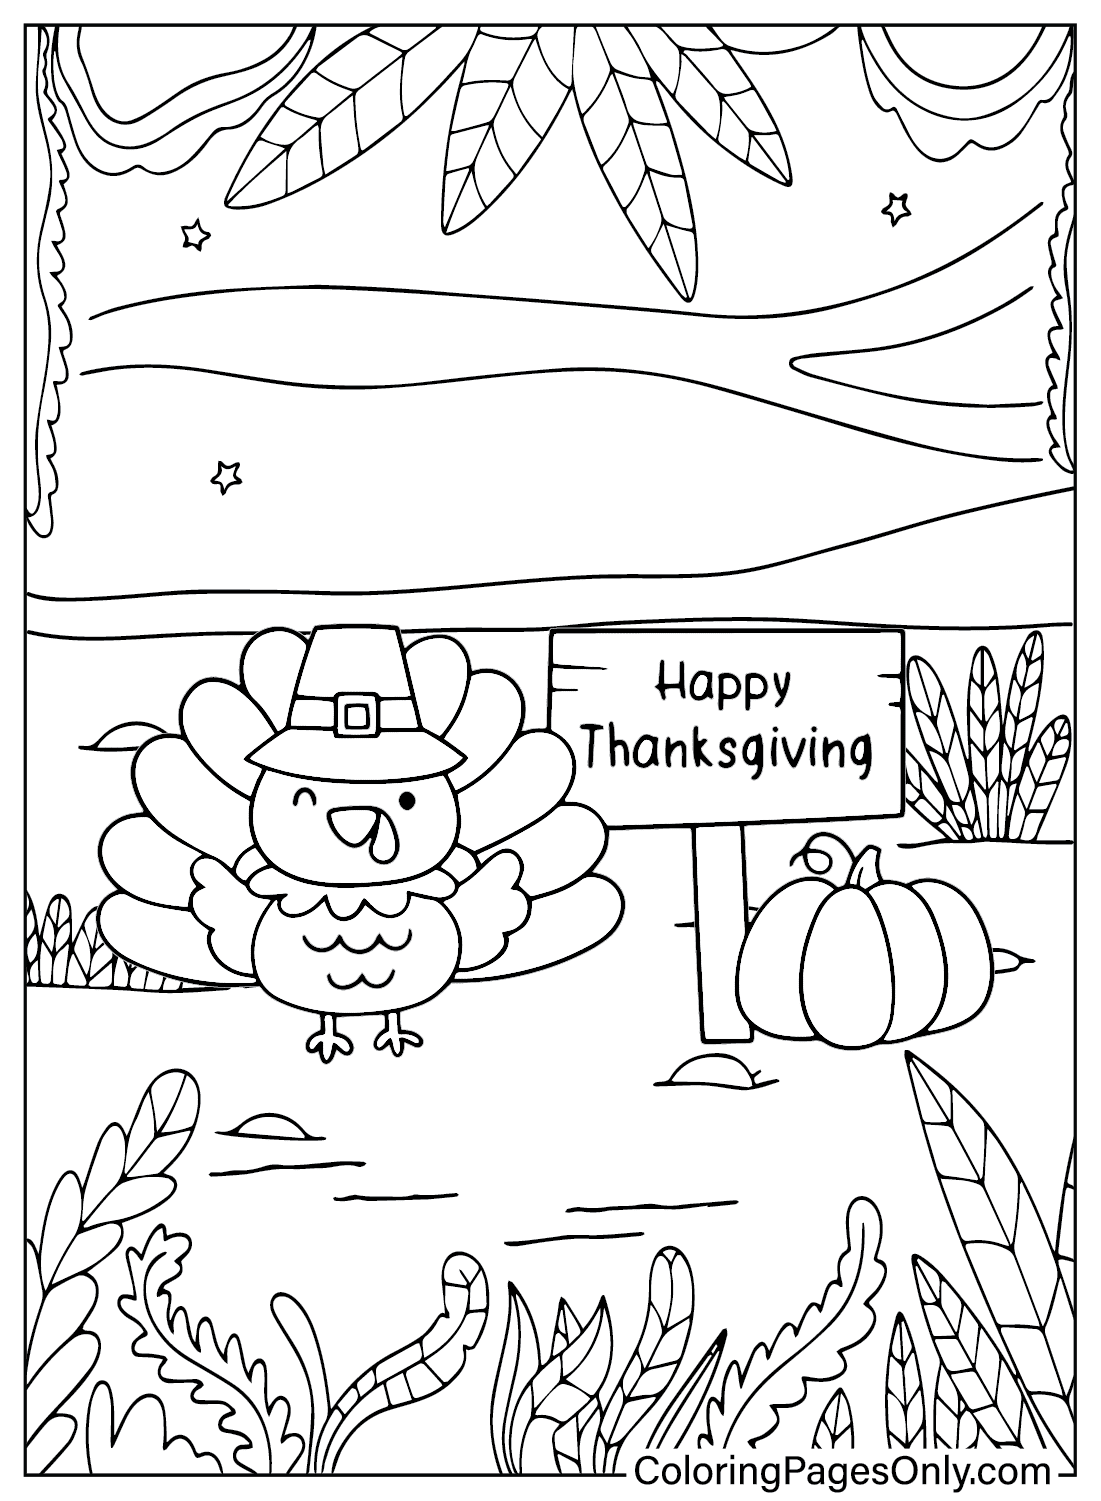 Thanksgiving kleurplaat uit Turkije